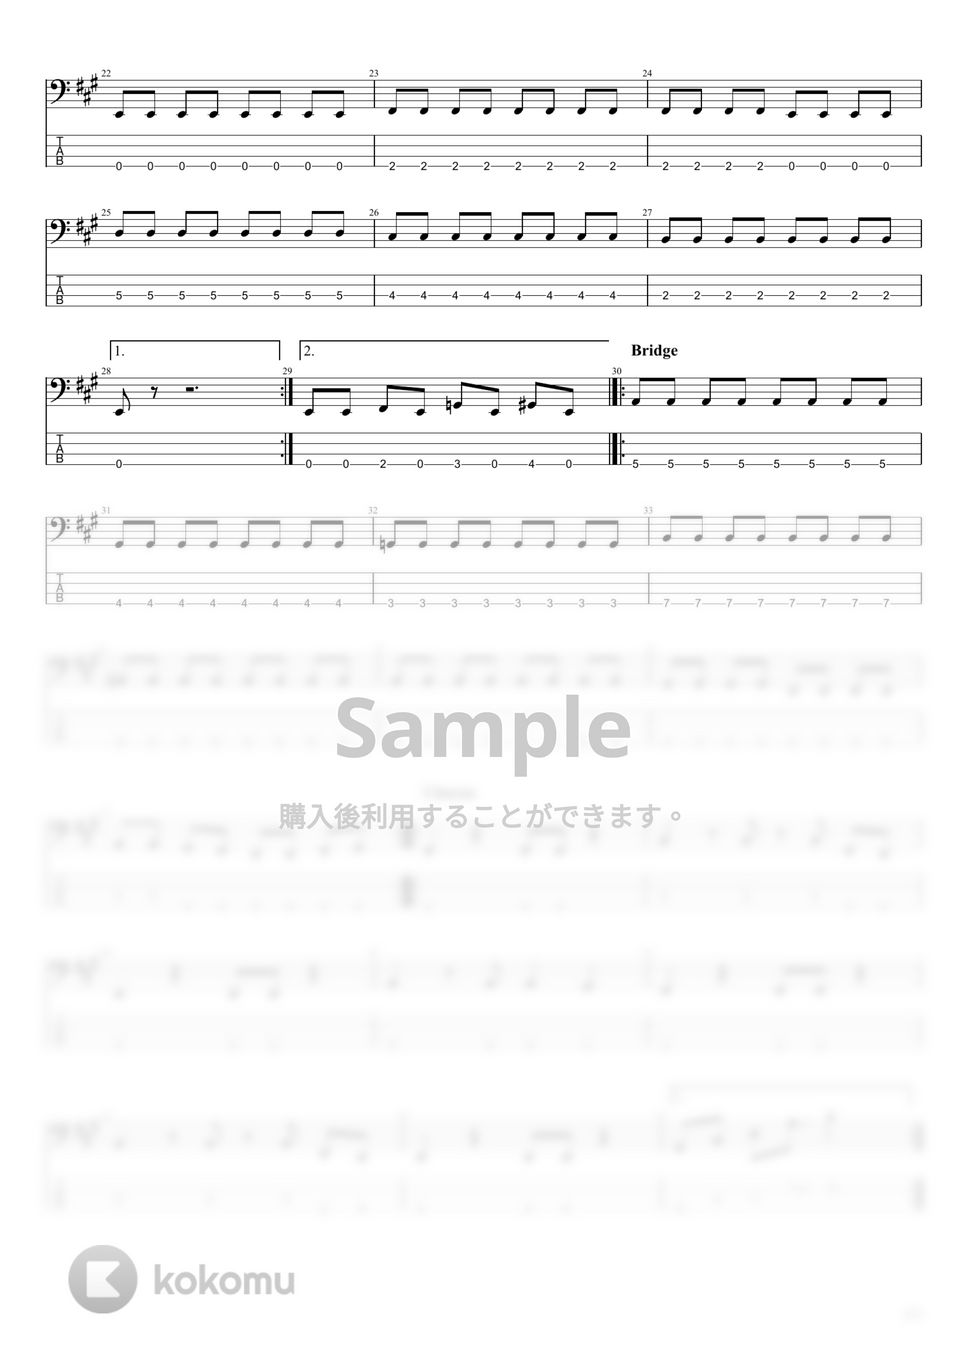 BOOWY - BOOWY楽譜集Vol.1 (15曲) by まっきん